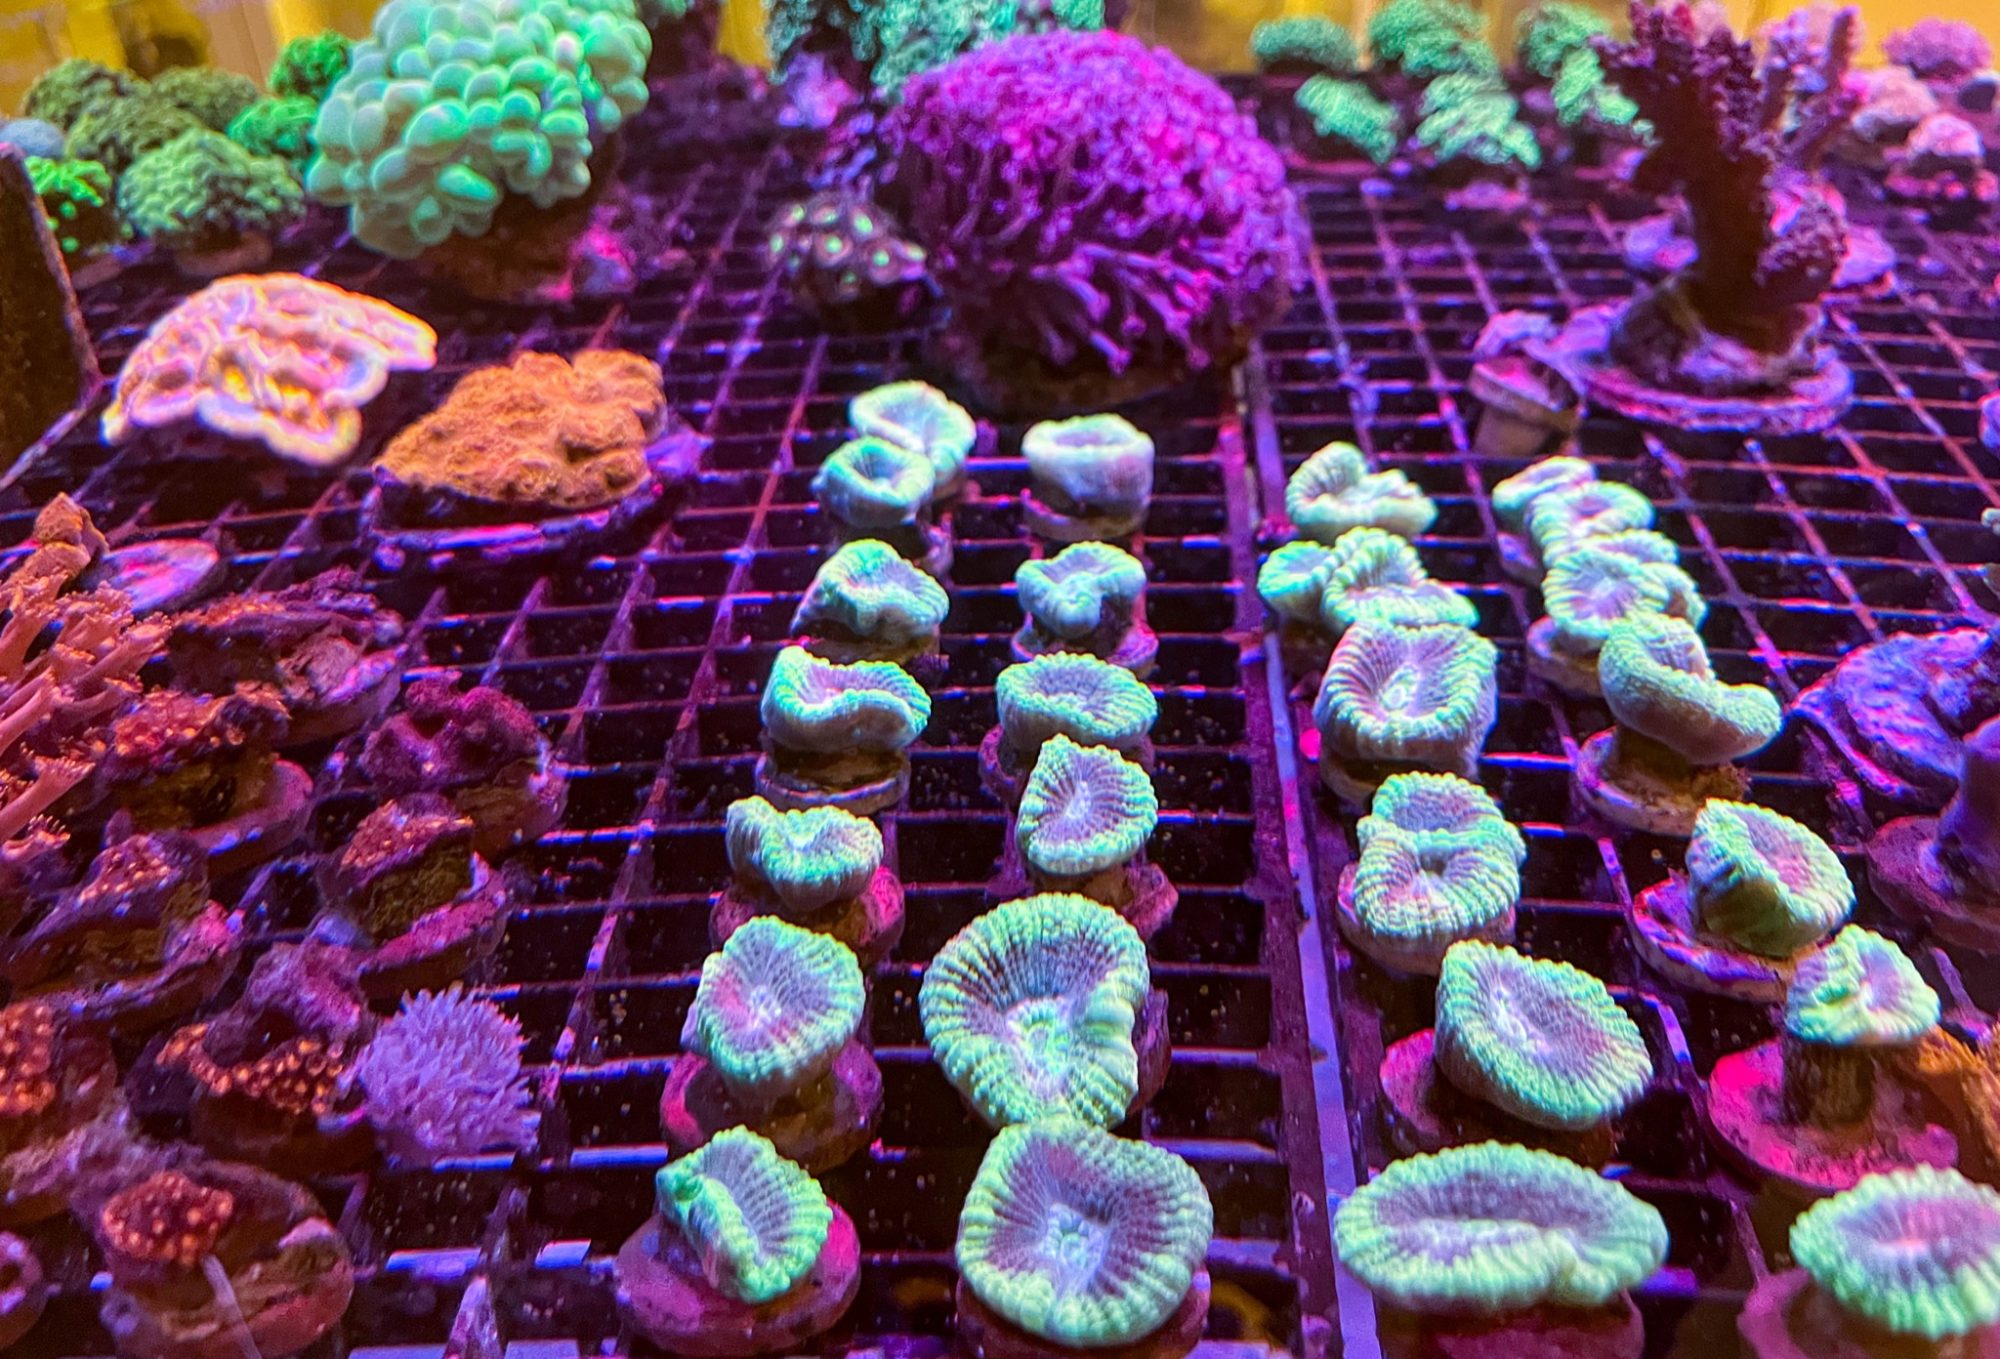 Colourful coral in aquarium